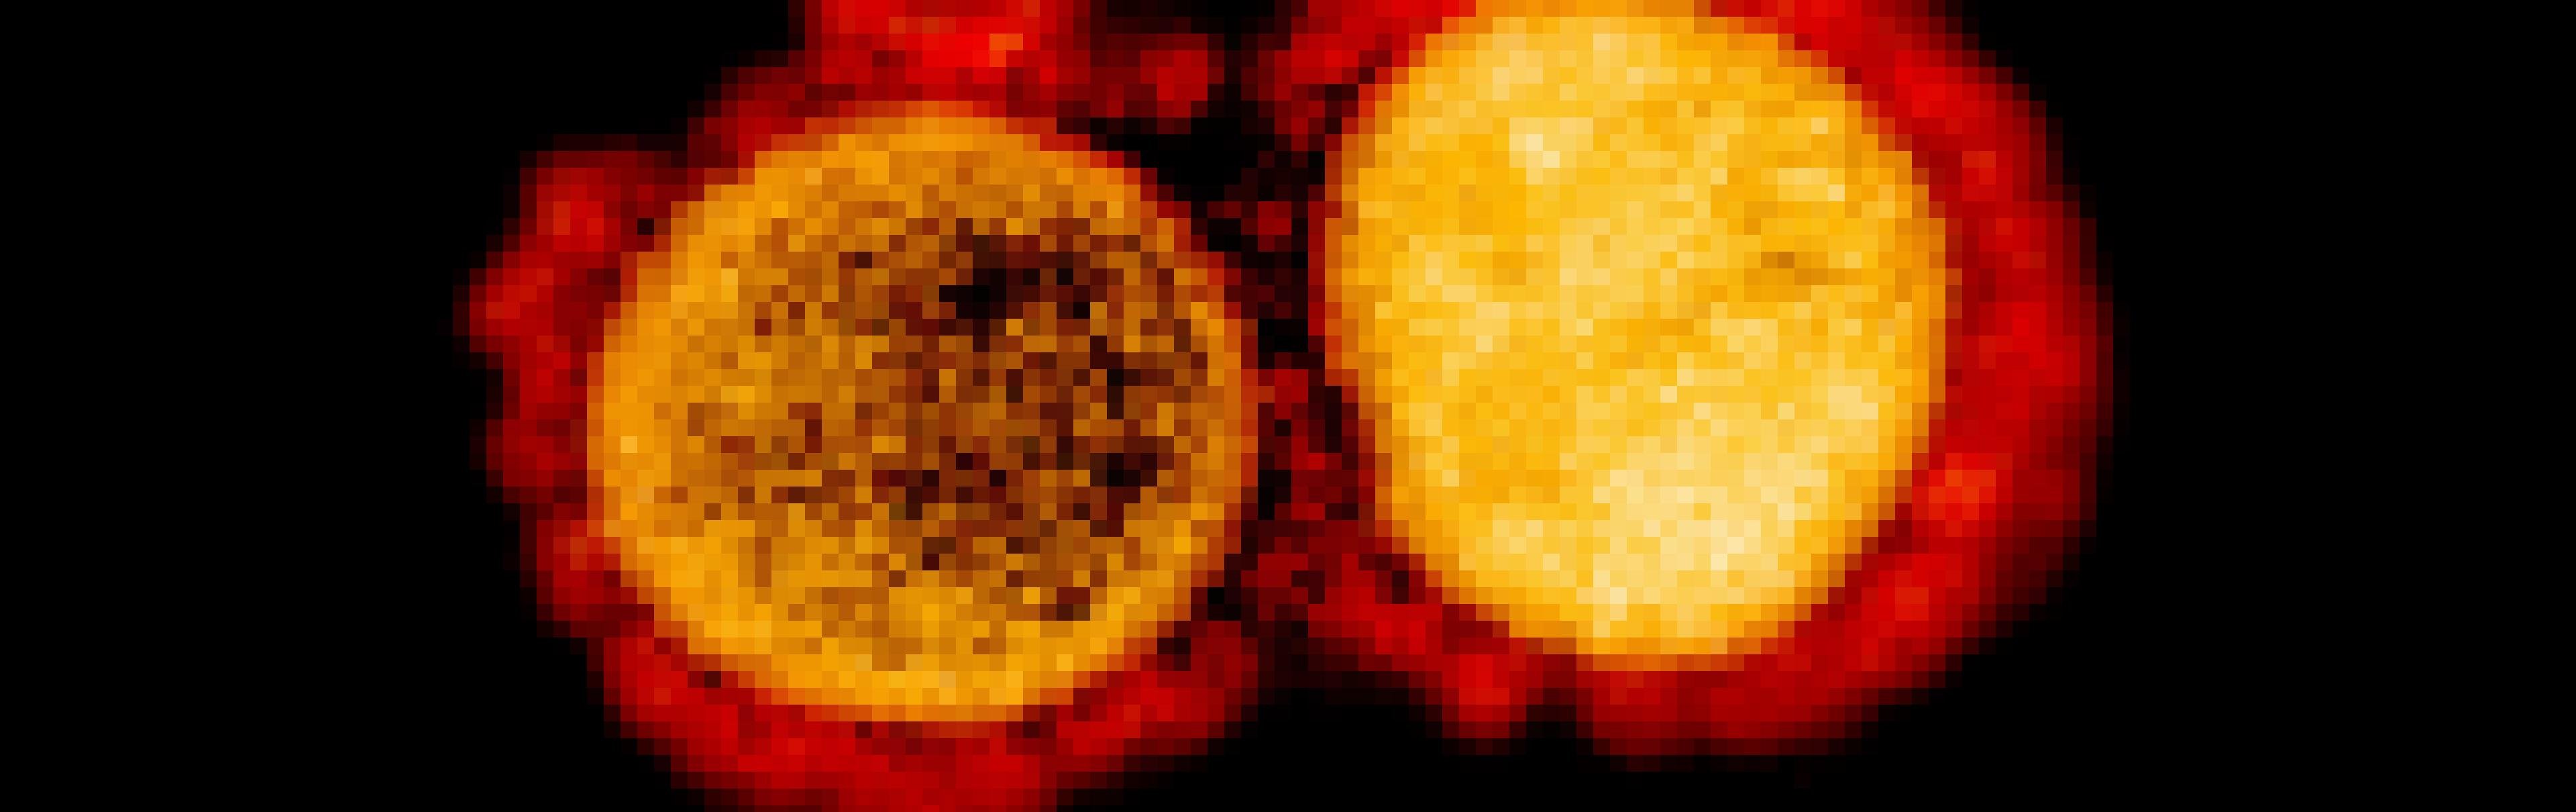 Das Bild zeigt zwei Coronaviren in einer extremen Vergrößerung. Sie sind rundlich und haben dornenartige Fortsätze, die ihnen beim Eindringen in menschliche Zellen helfen.